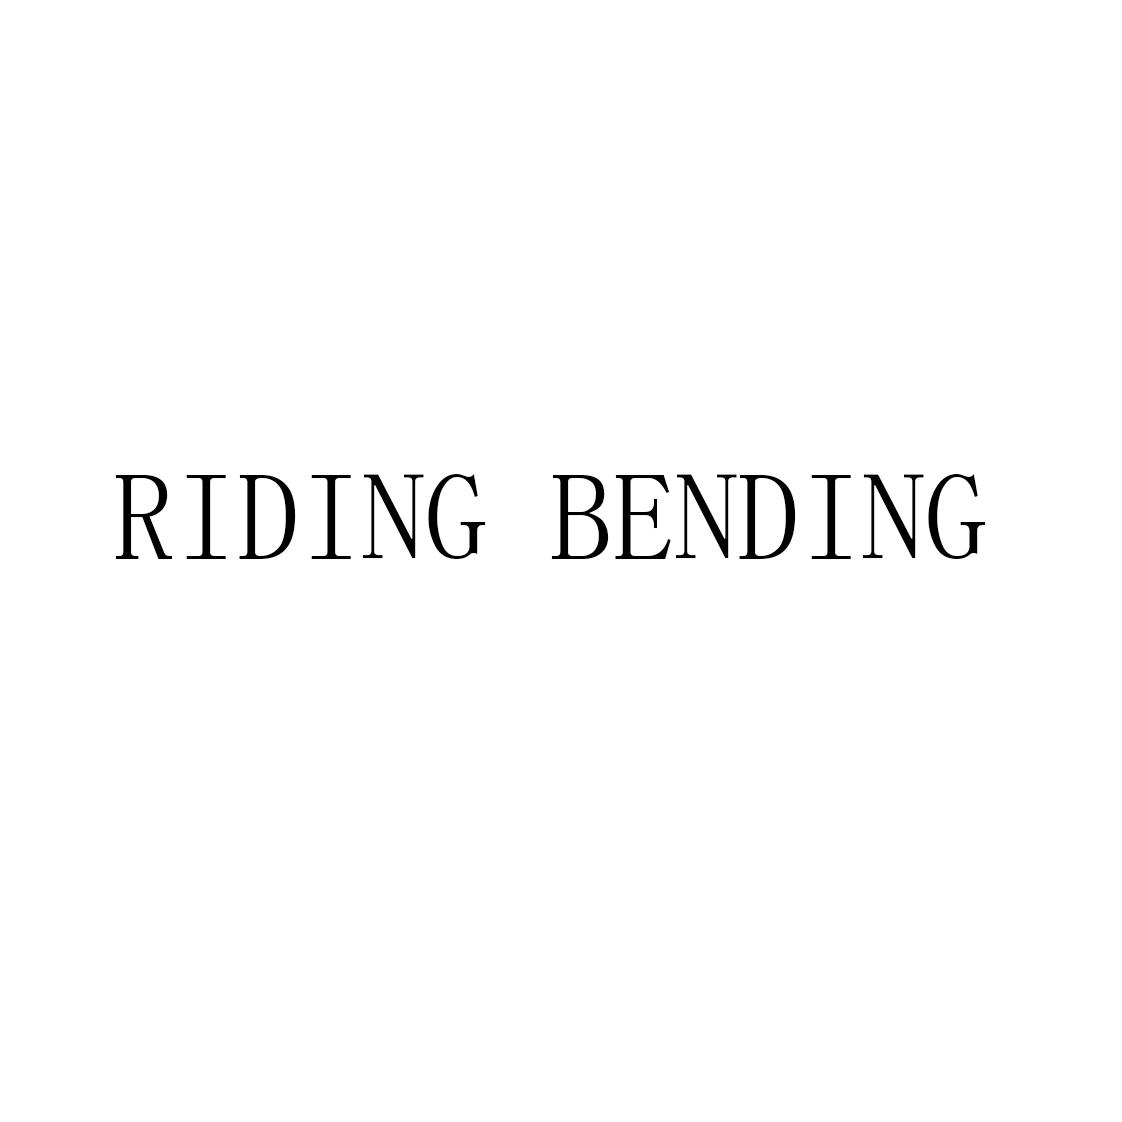 RIDING BENDING